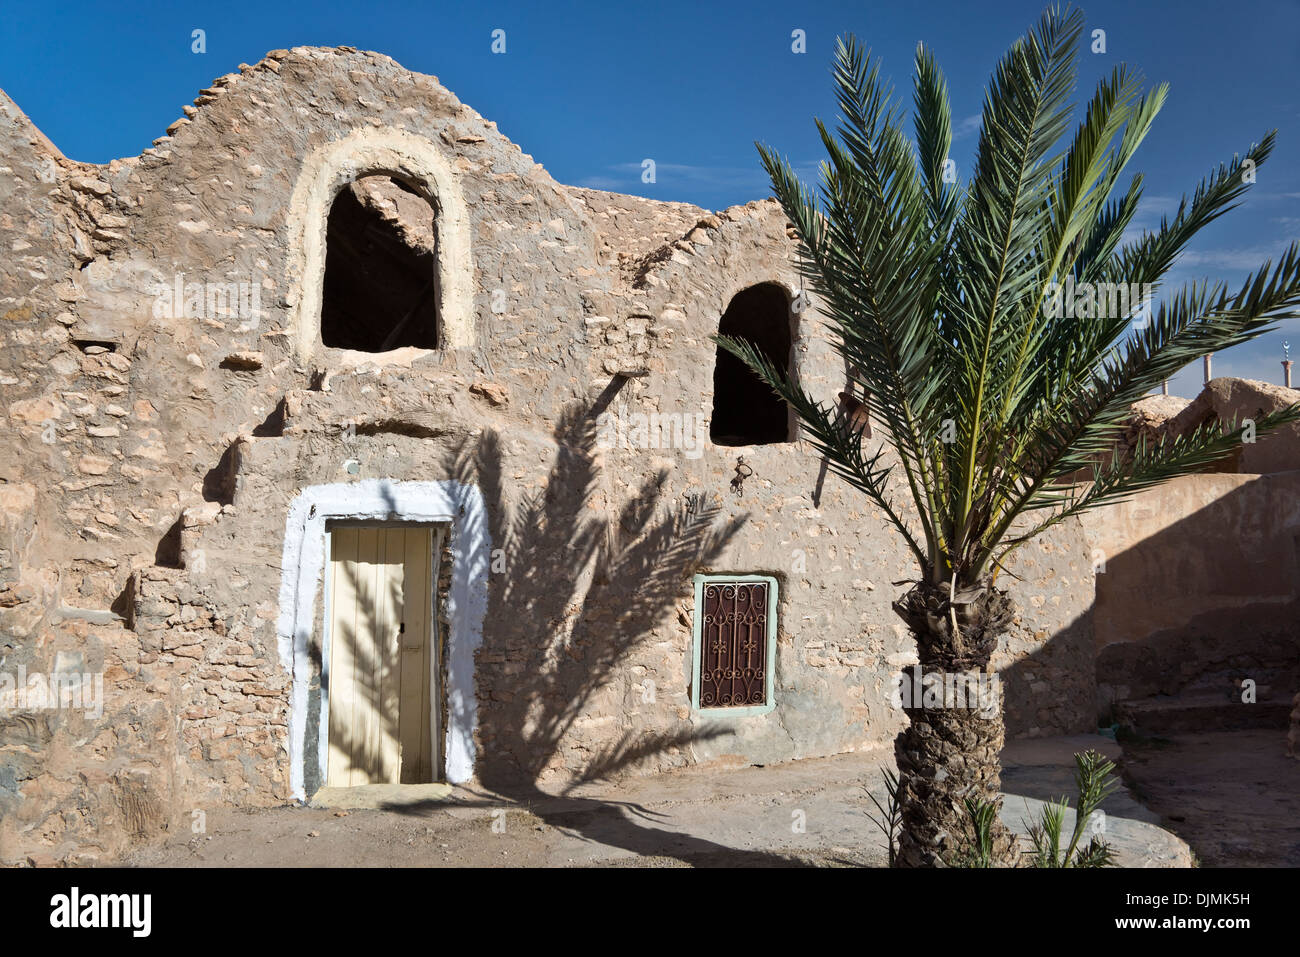 Ksar Hadada (Stadt Mos Espa in Planeten Tatooine von dem Film Star Wars) - Tunesien Stockfoto